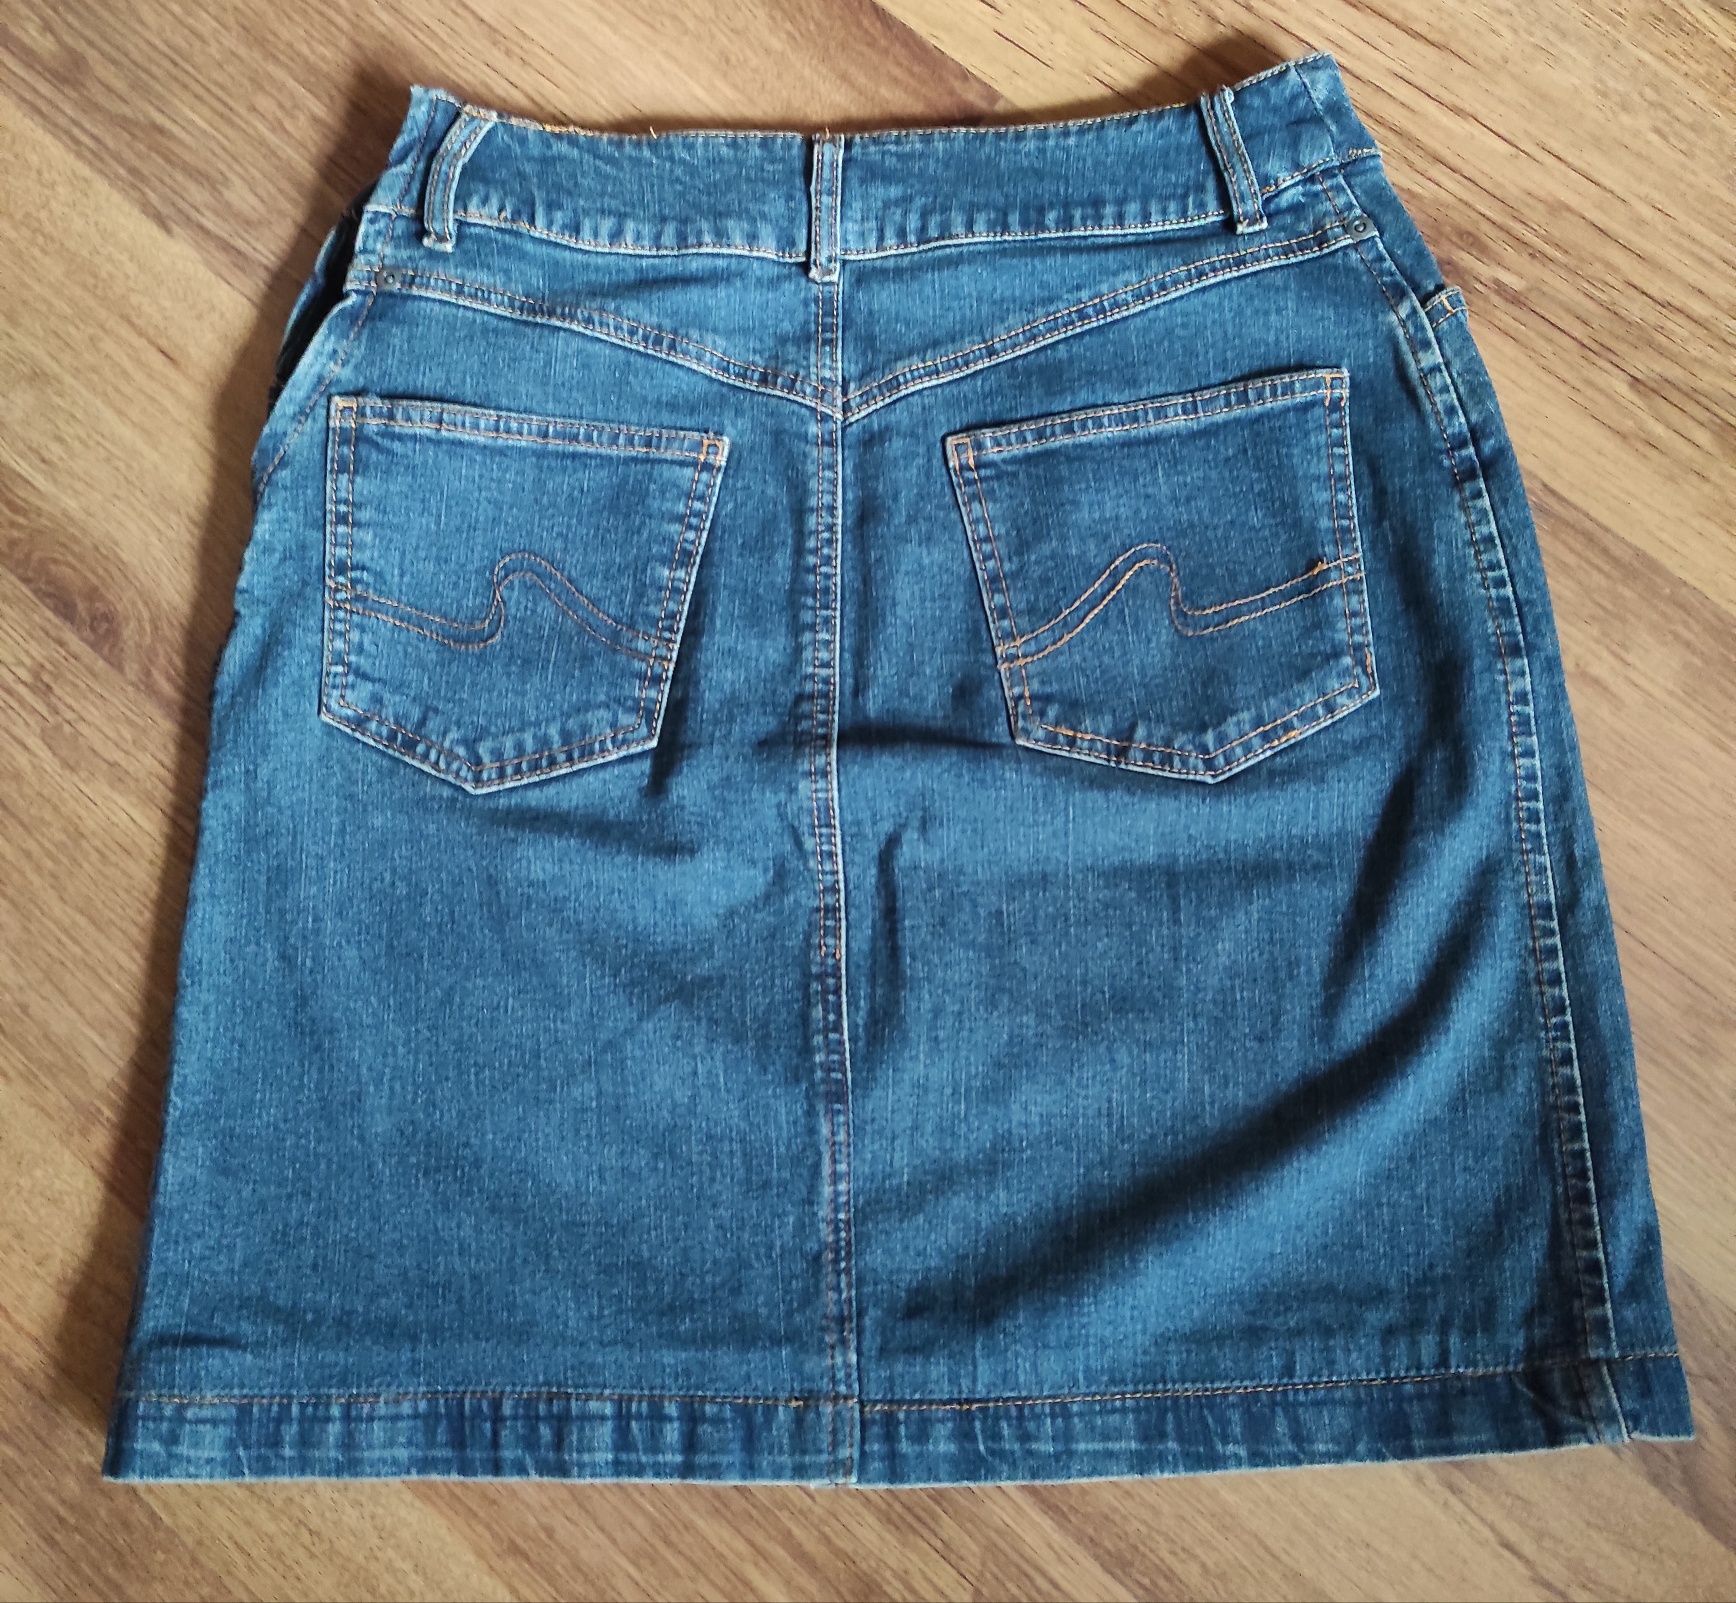 Spódnica jeansowa M/L